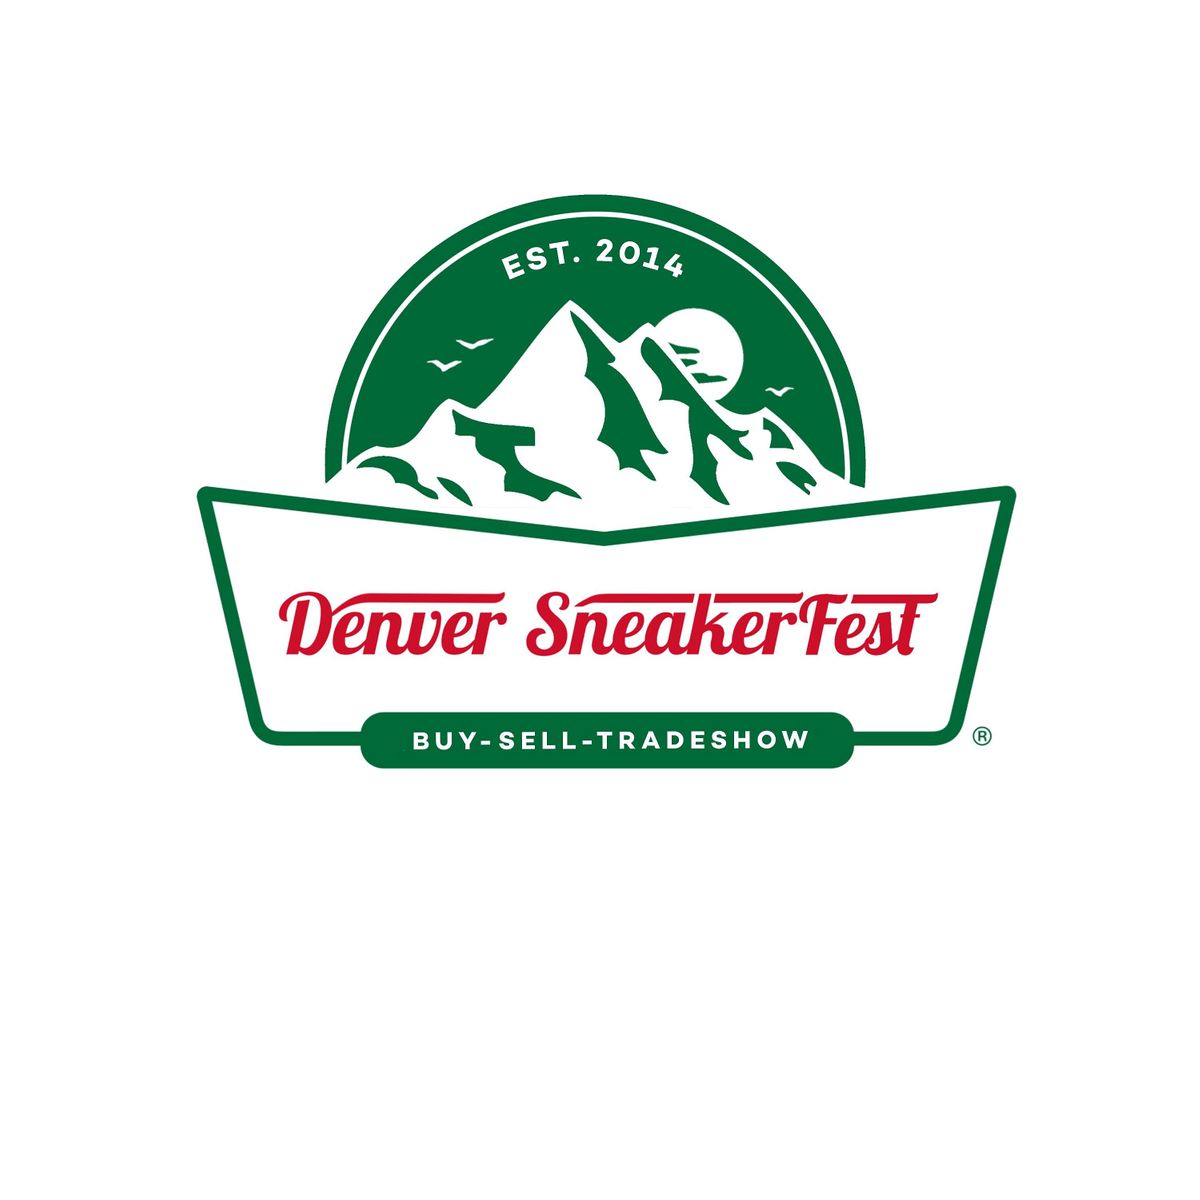 Denver Sneakerfest